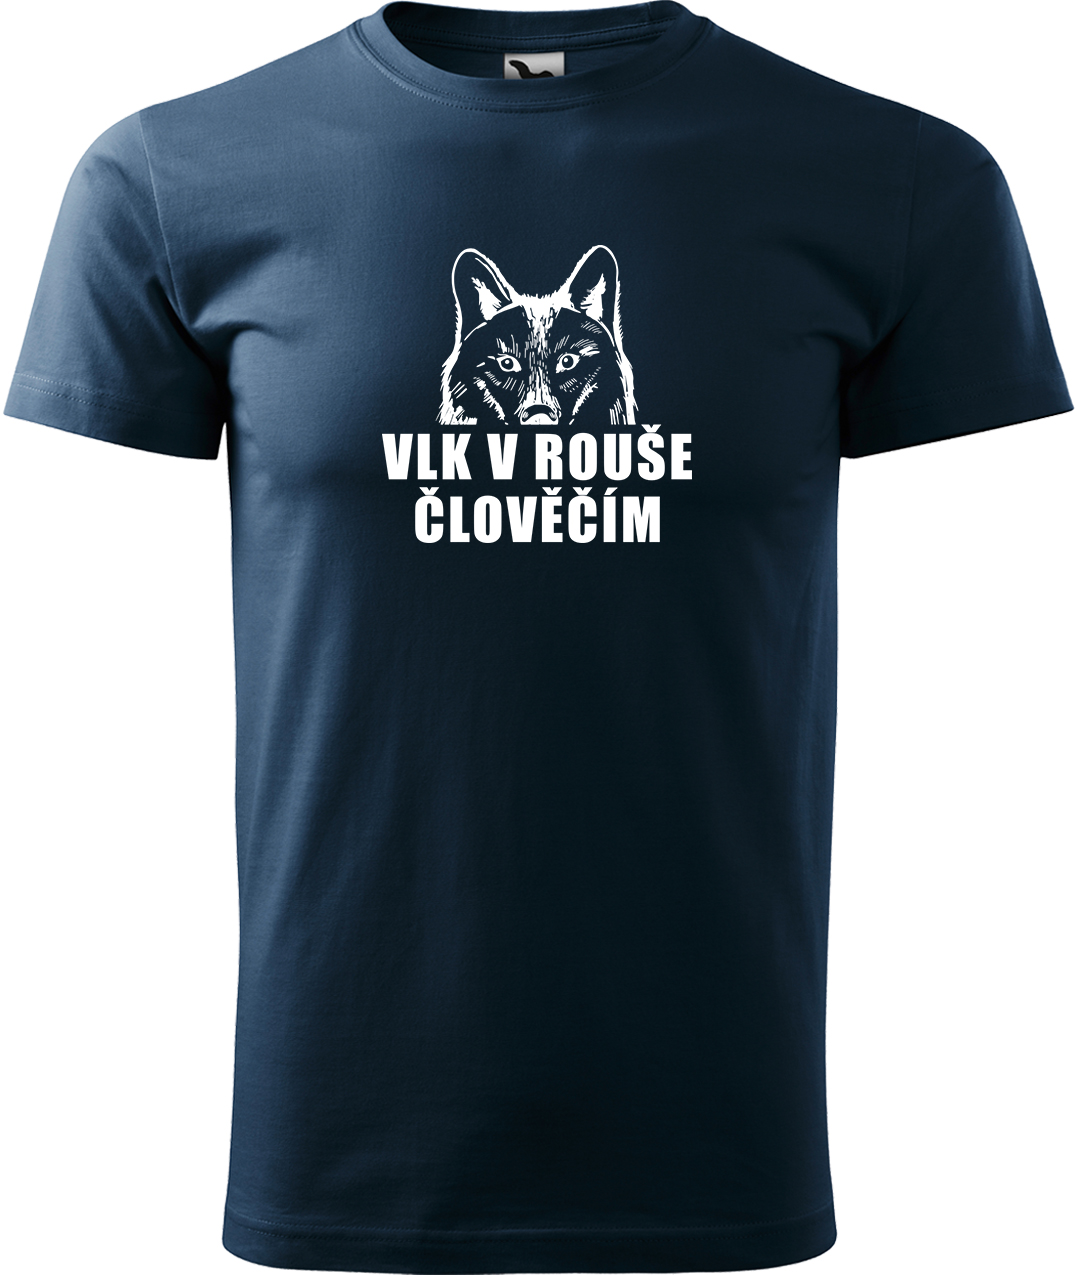 Pánské tričko s vlkem - Vlk v rouše člověčím Velikost: S, Barva: Námořní modrá (02), Střih: pánský